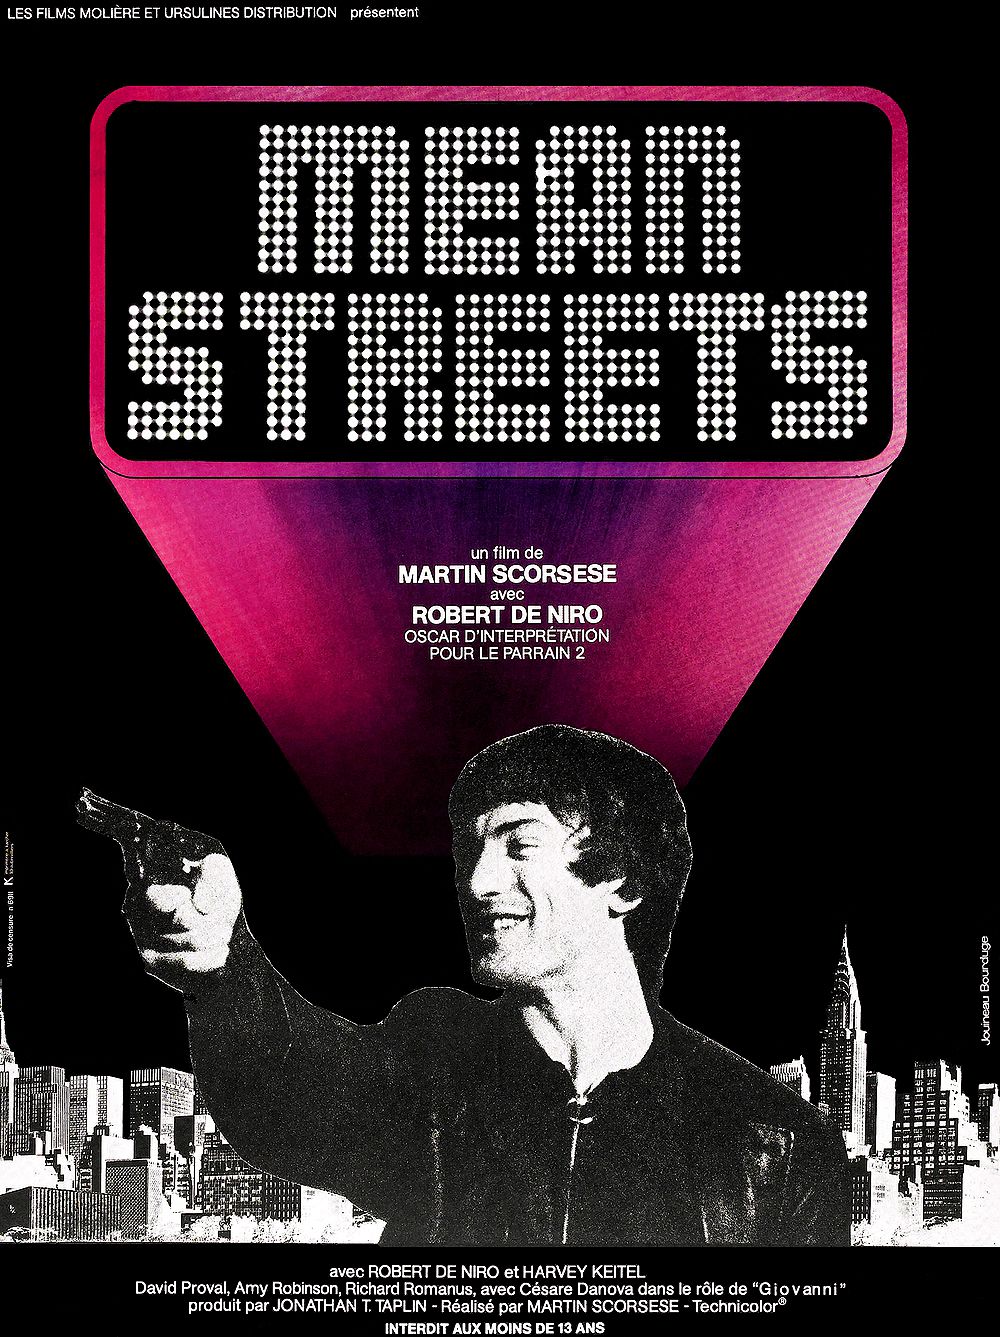 affiche du film Mean Streets